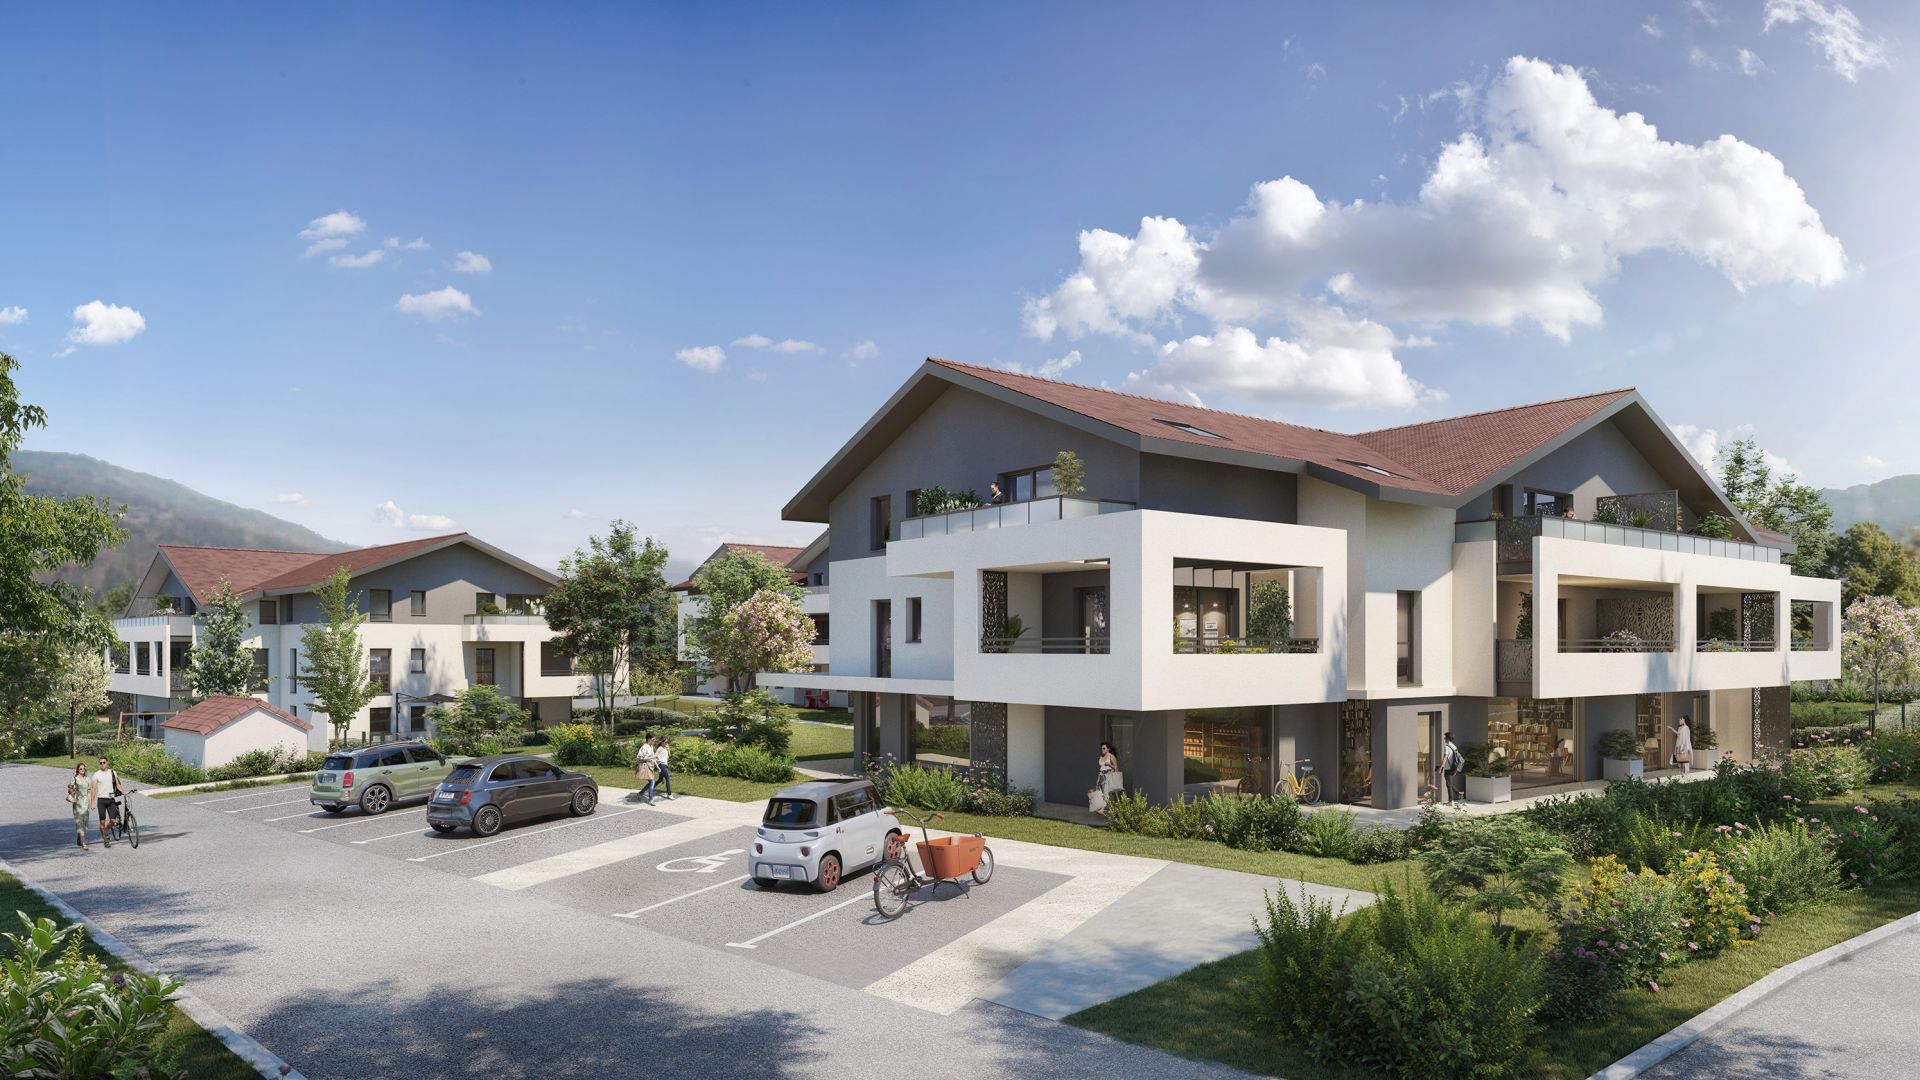 Greencity immobilier - achat appartements neufs du T2 au T4 - Résidence Le Diapason - 74250 Marcellaz  